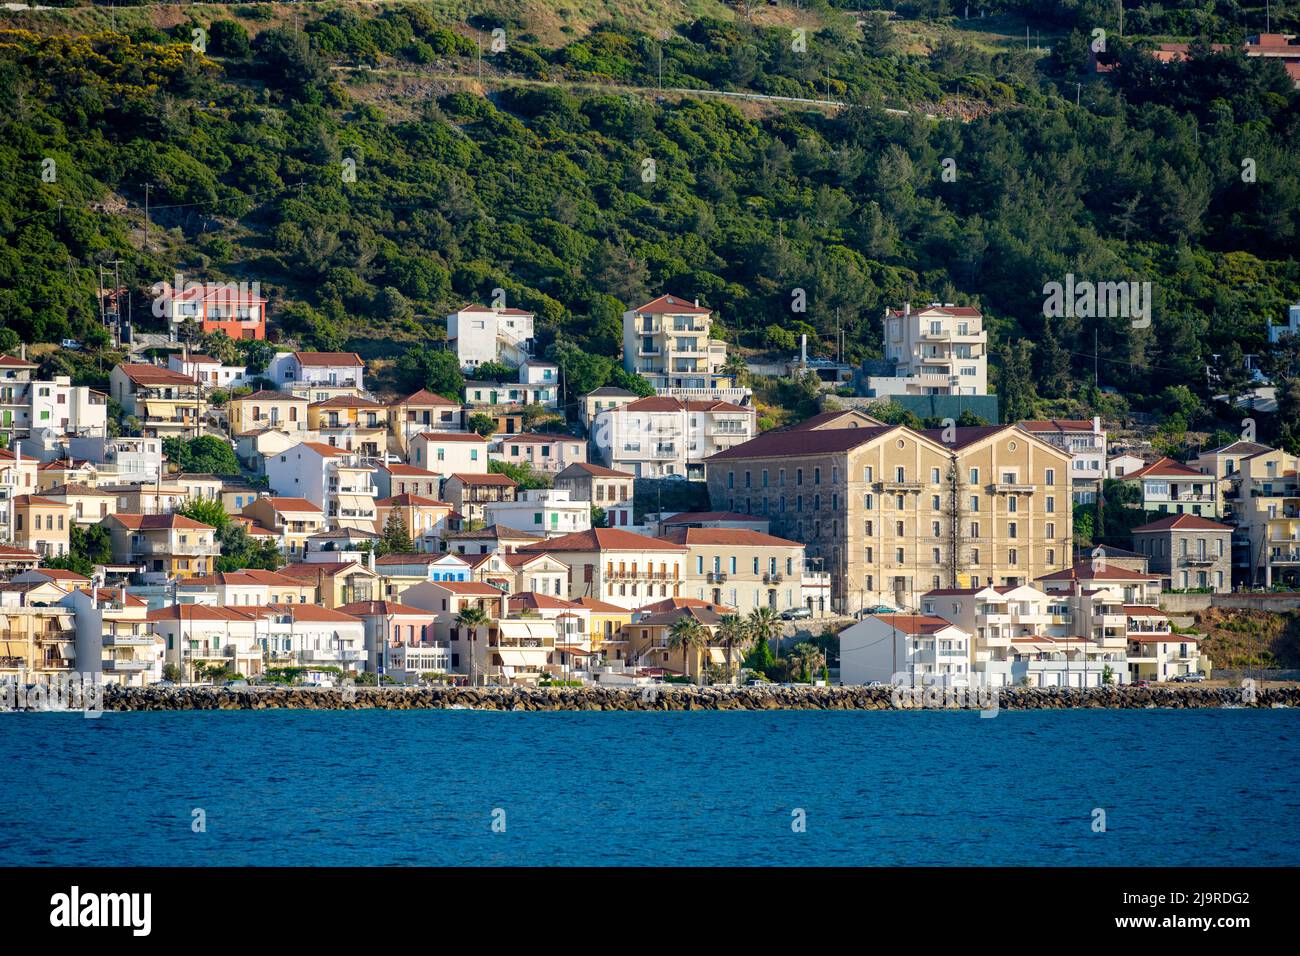 Griechenland, Insel Samos, Inselhauptort Samos (auch Vathy), ehemaliges Lagerhaus inmitten der Wohnhäuser. Stock Photo